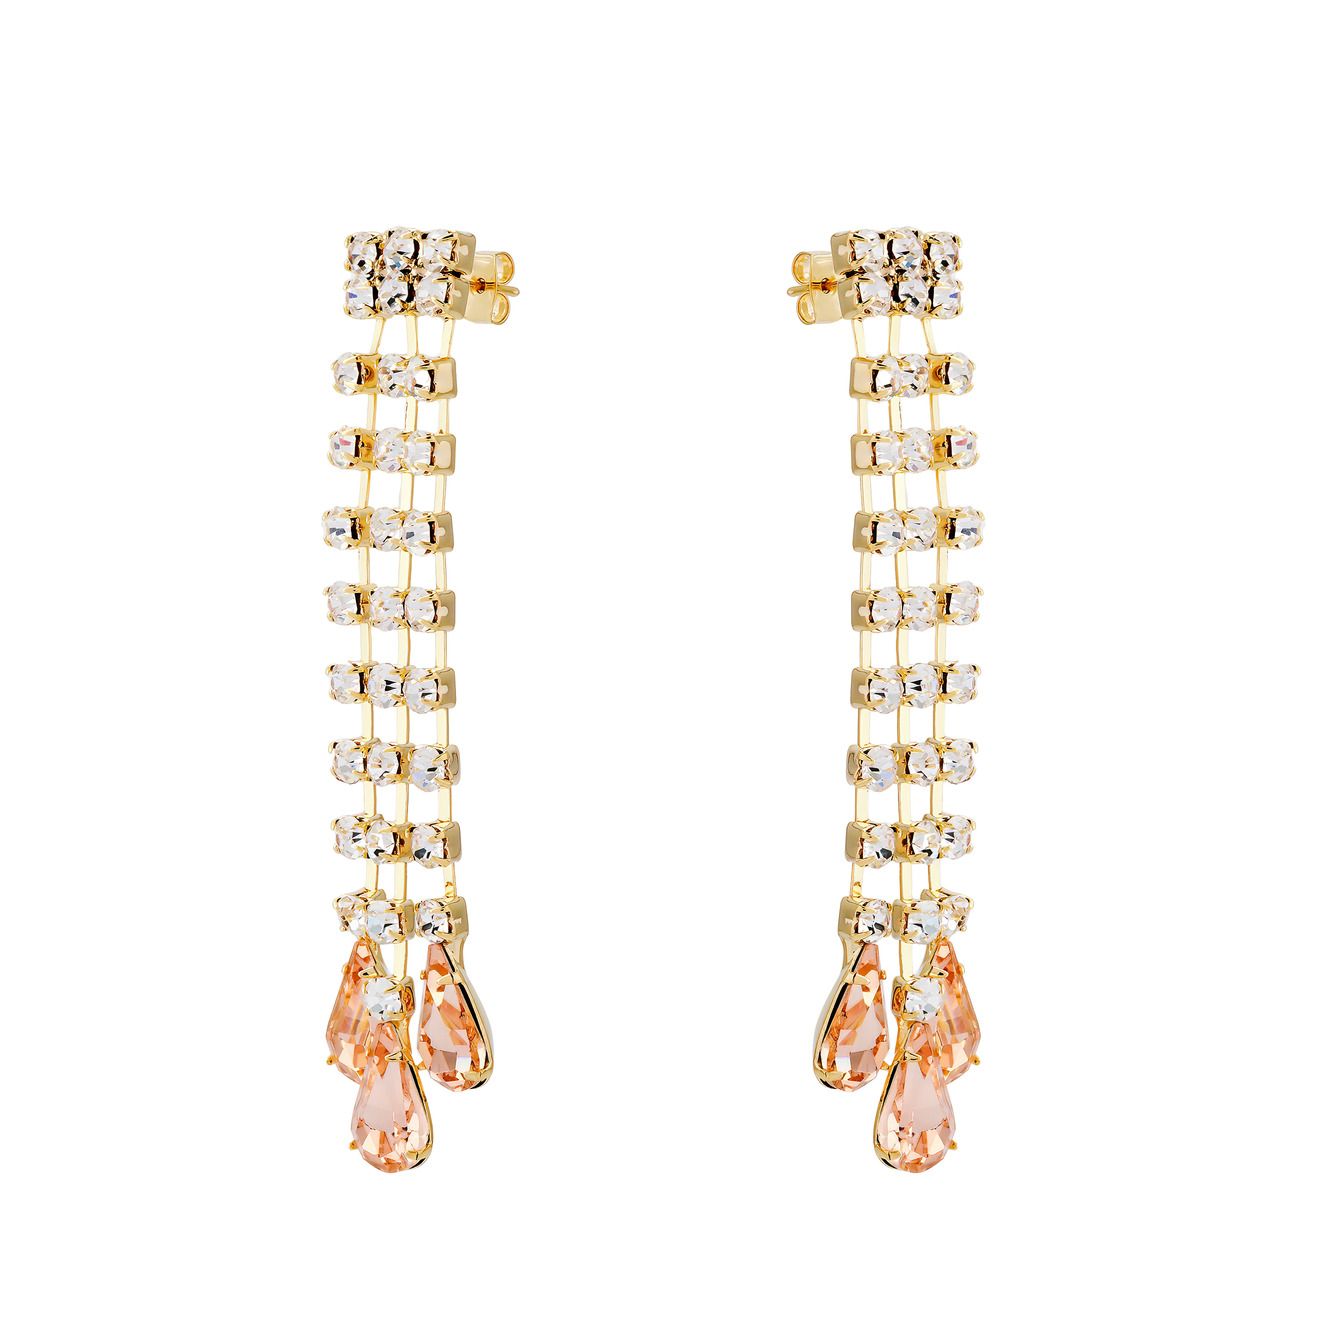 herald percy крупные серебристые серьги с дорожками из кристаллов Herald Percy Золотистые серьги-дождики с дорожками из кристаллов и розовыми каплями